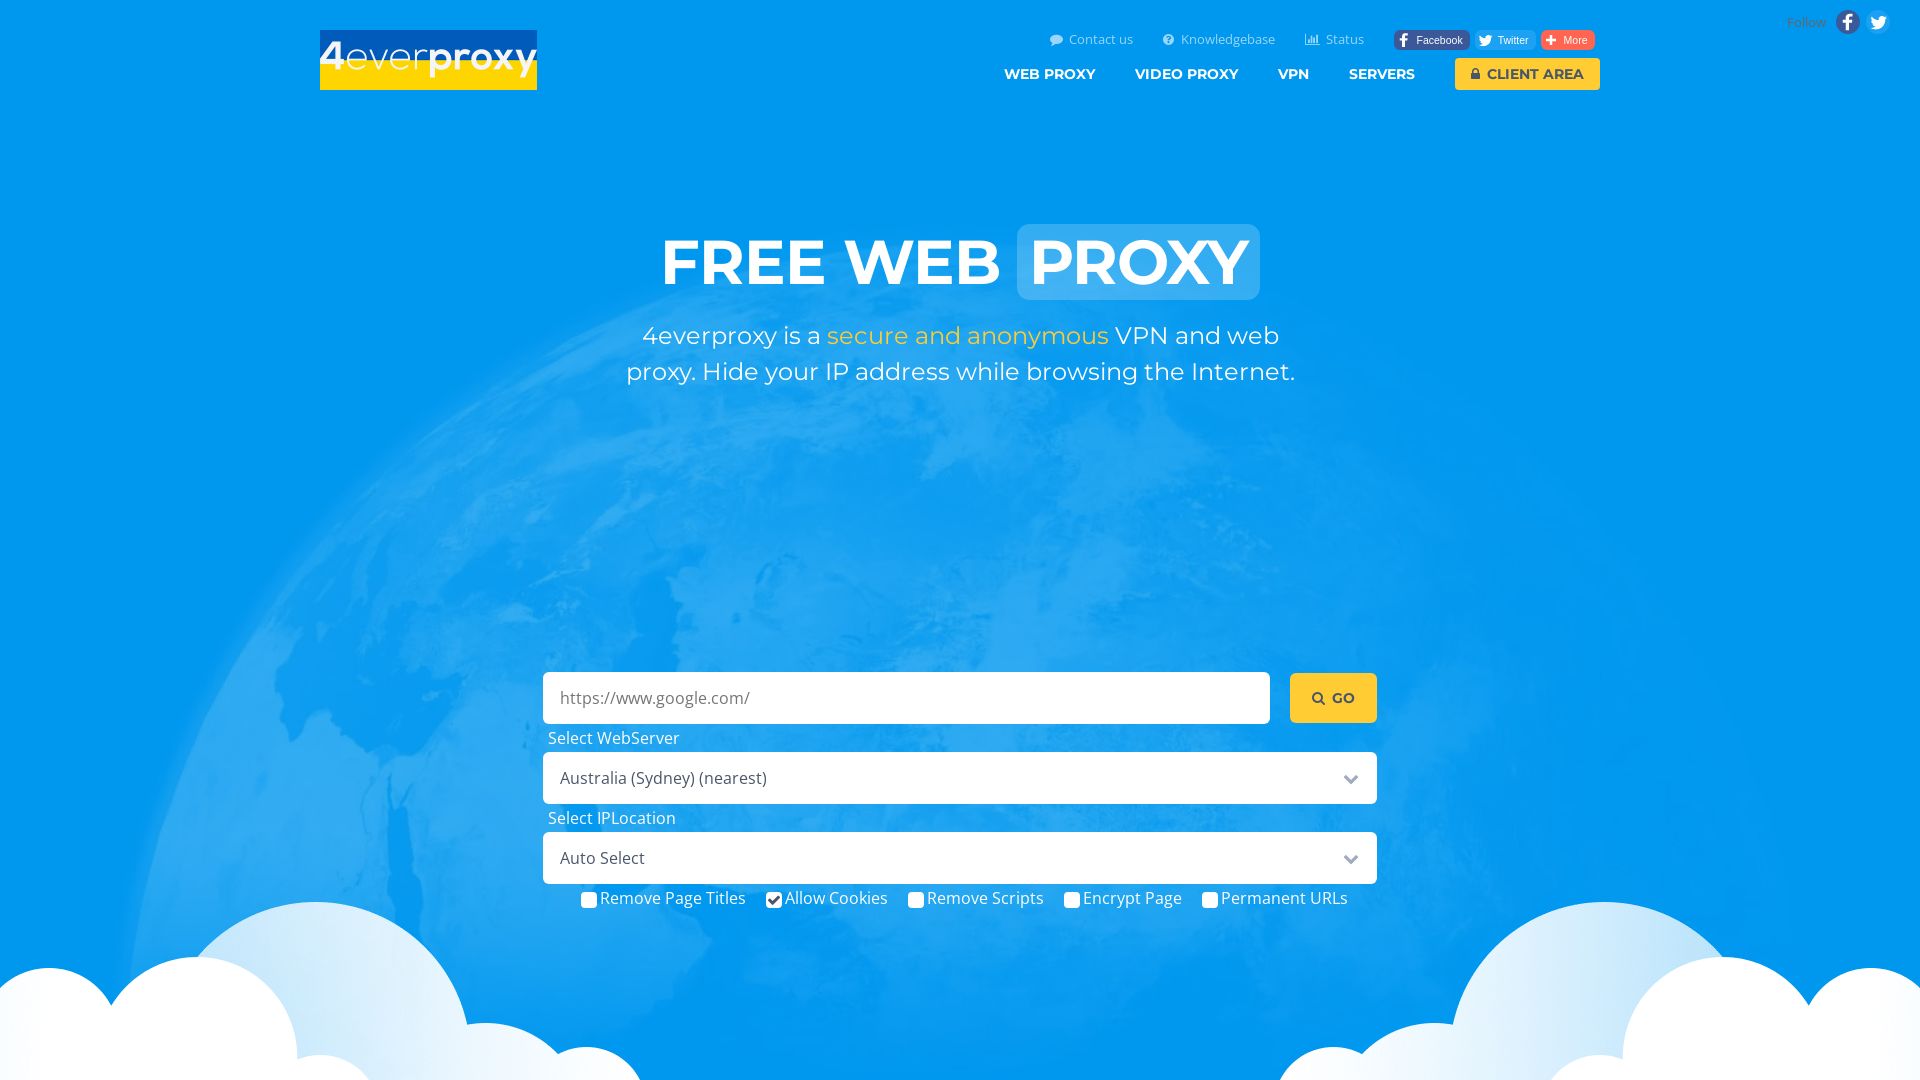 Website status 4everproxy.com is   ONLINE